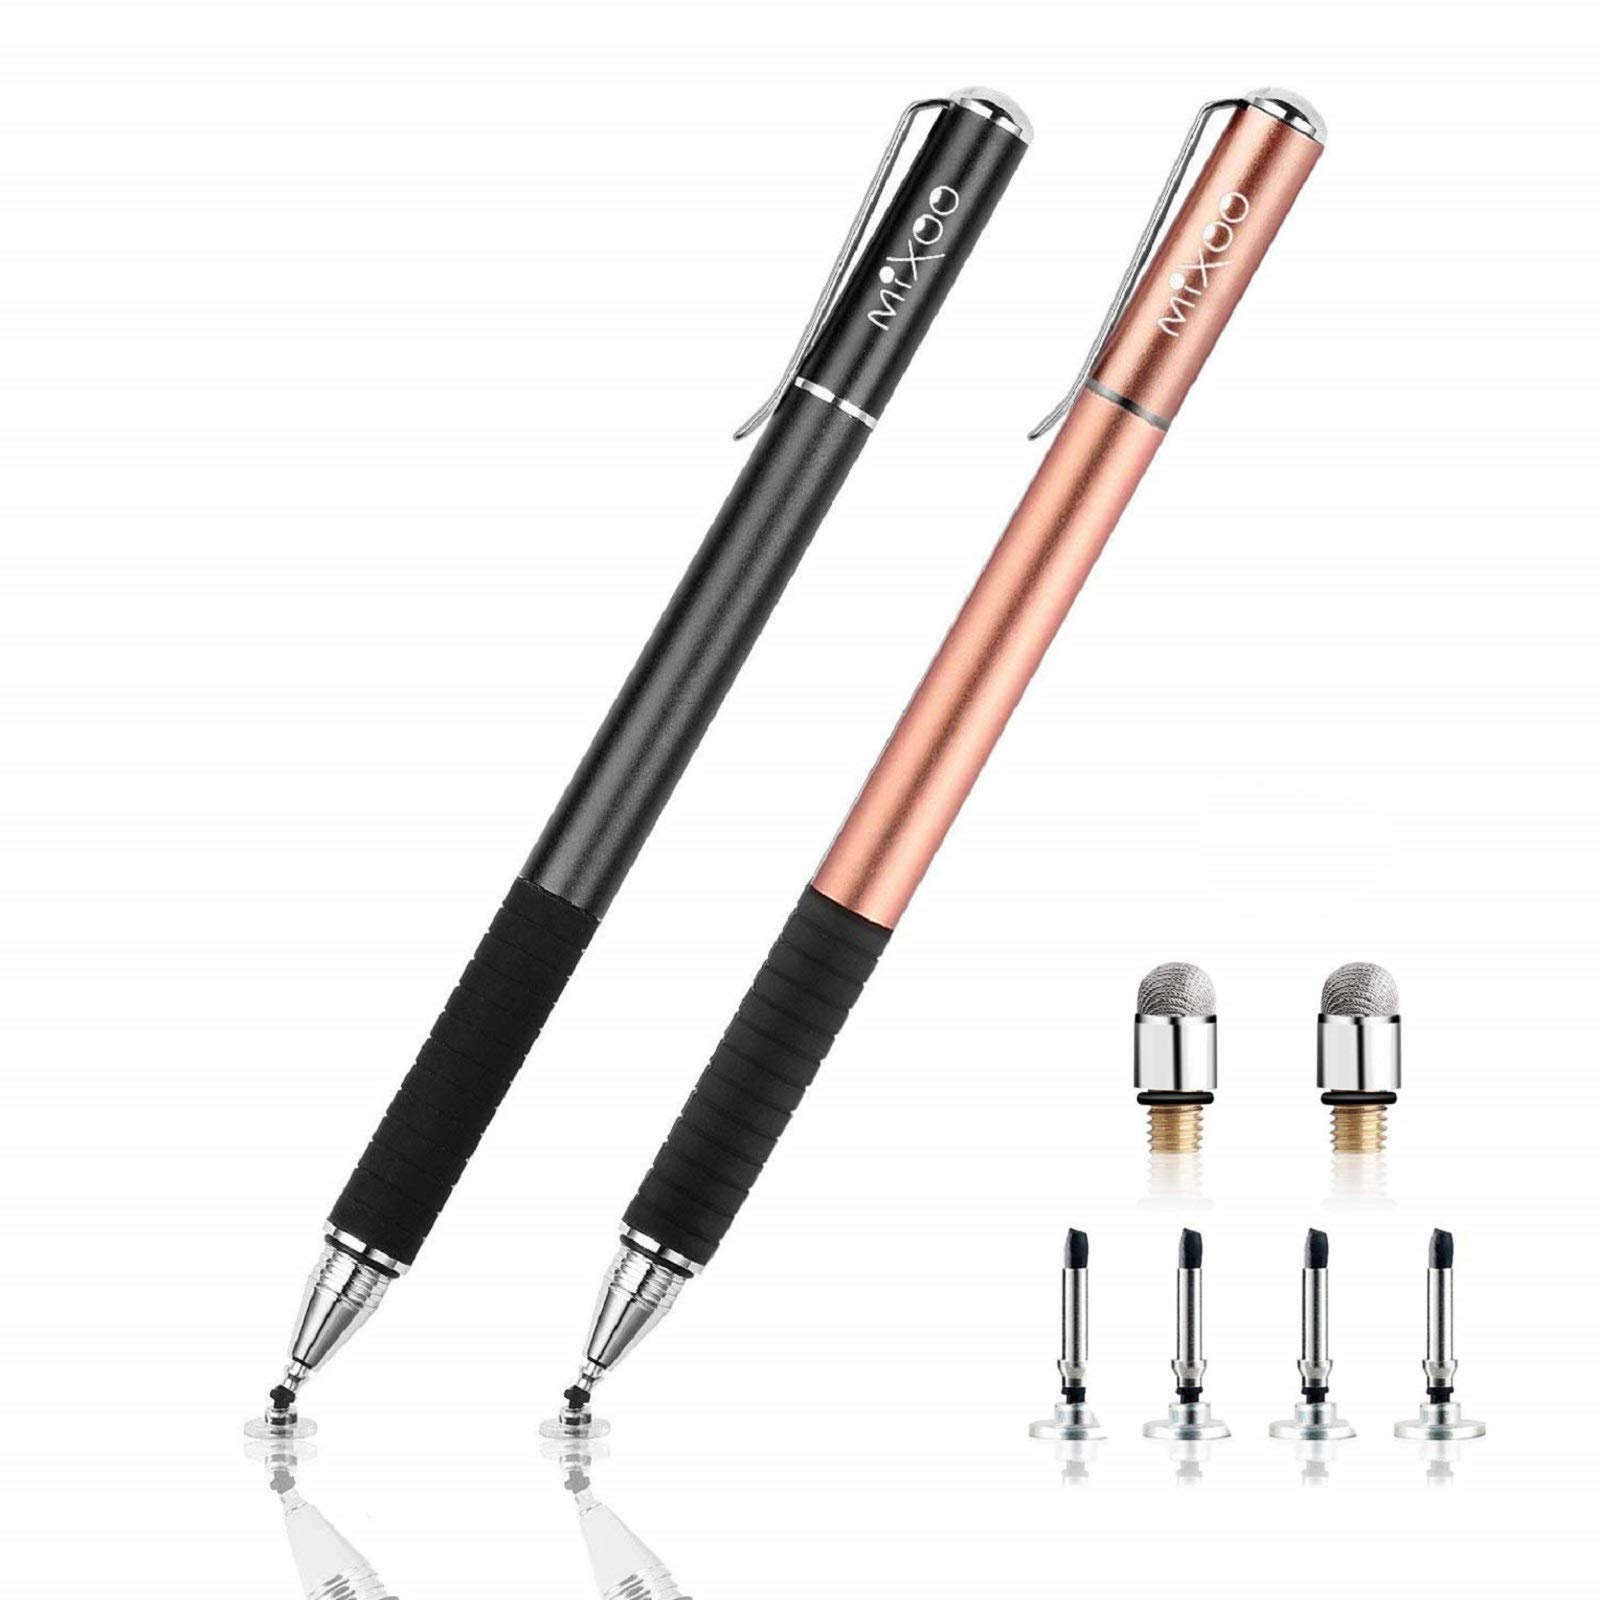 Mixoo Stift Präzision Disc Eingabestift Touchstift Stylus 2 in 1 Kapazitive Touchscreen Stift, kompatibel für Smartphones &Tablets (Shwarz + Roségold)